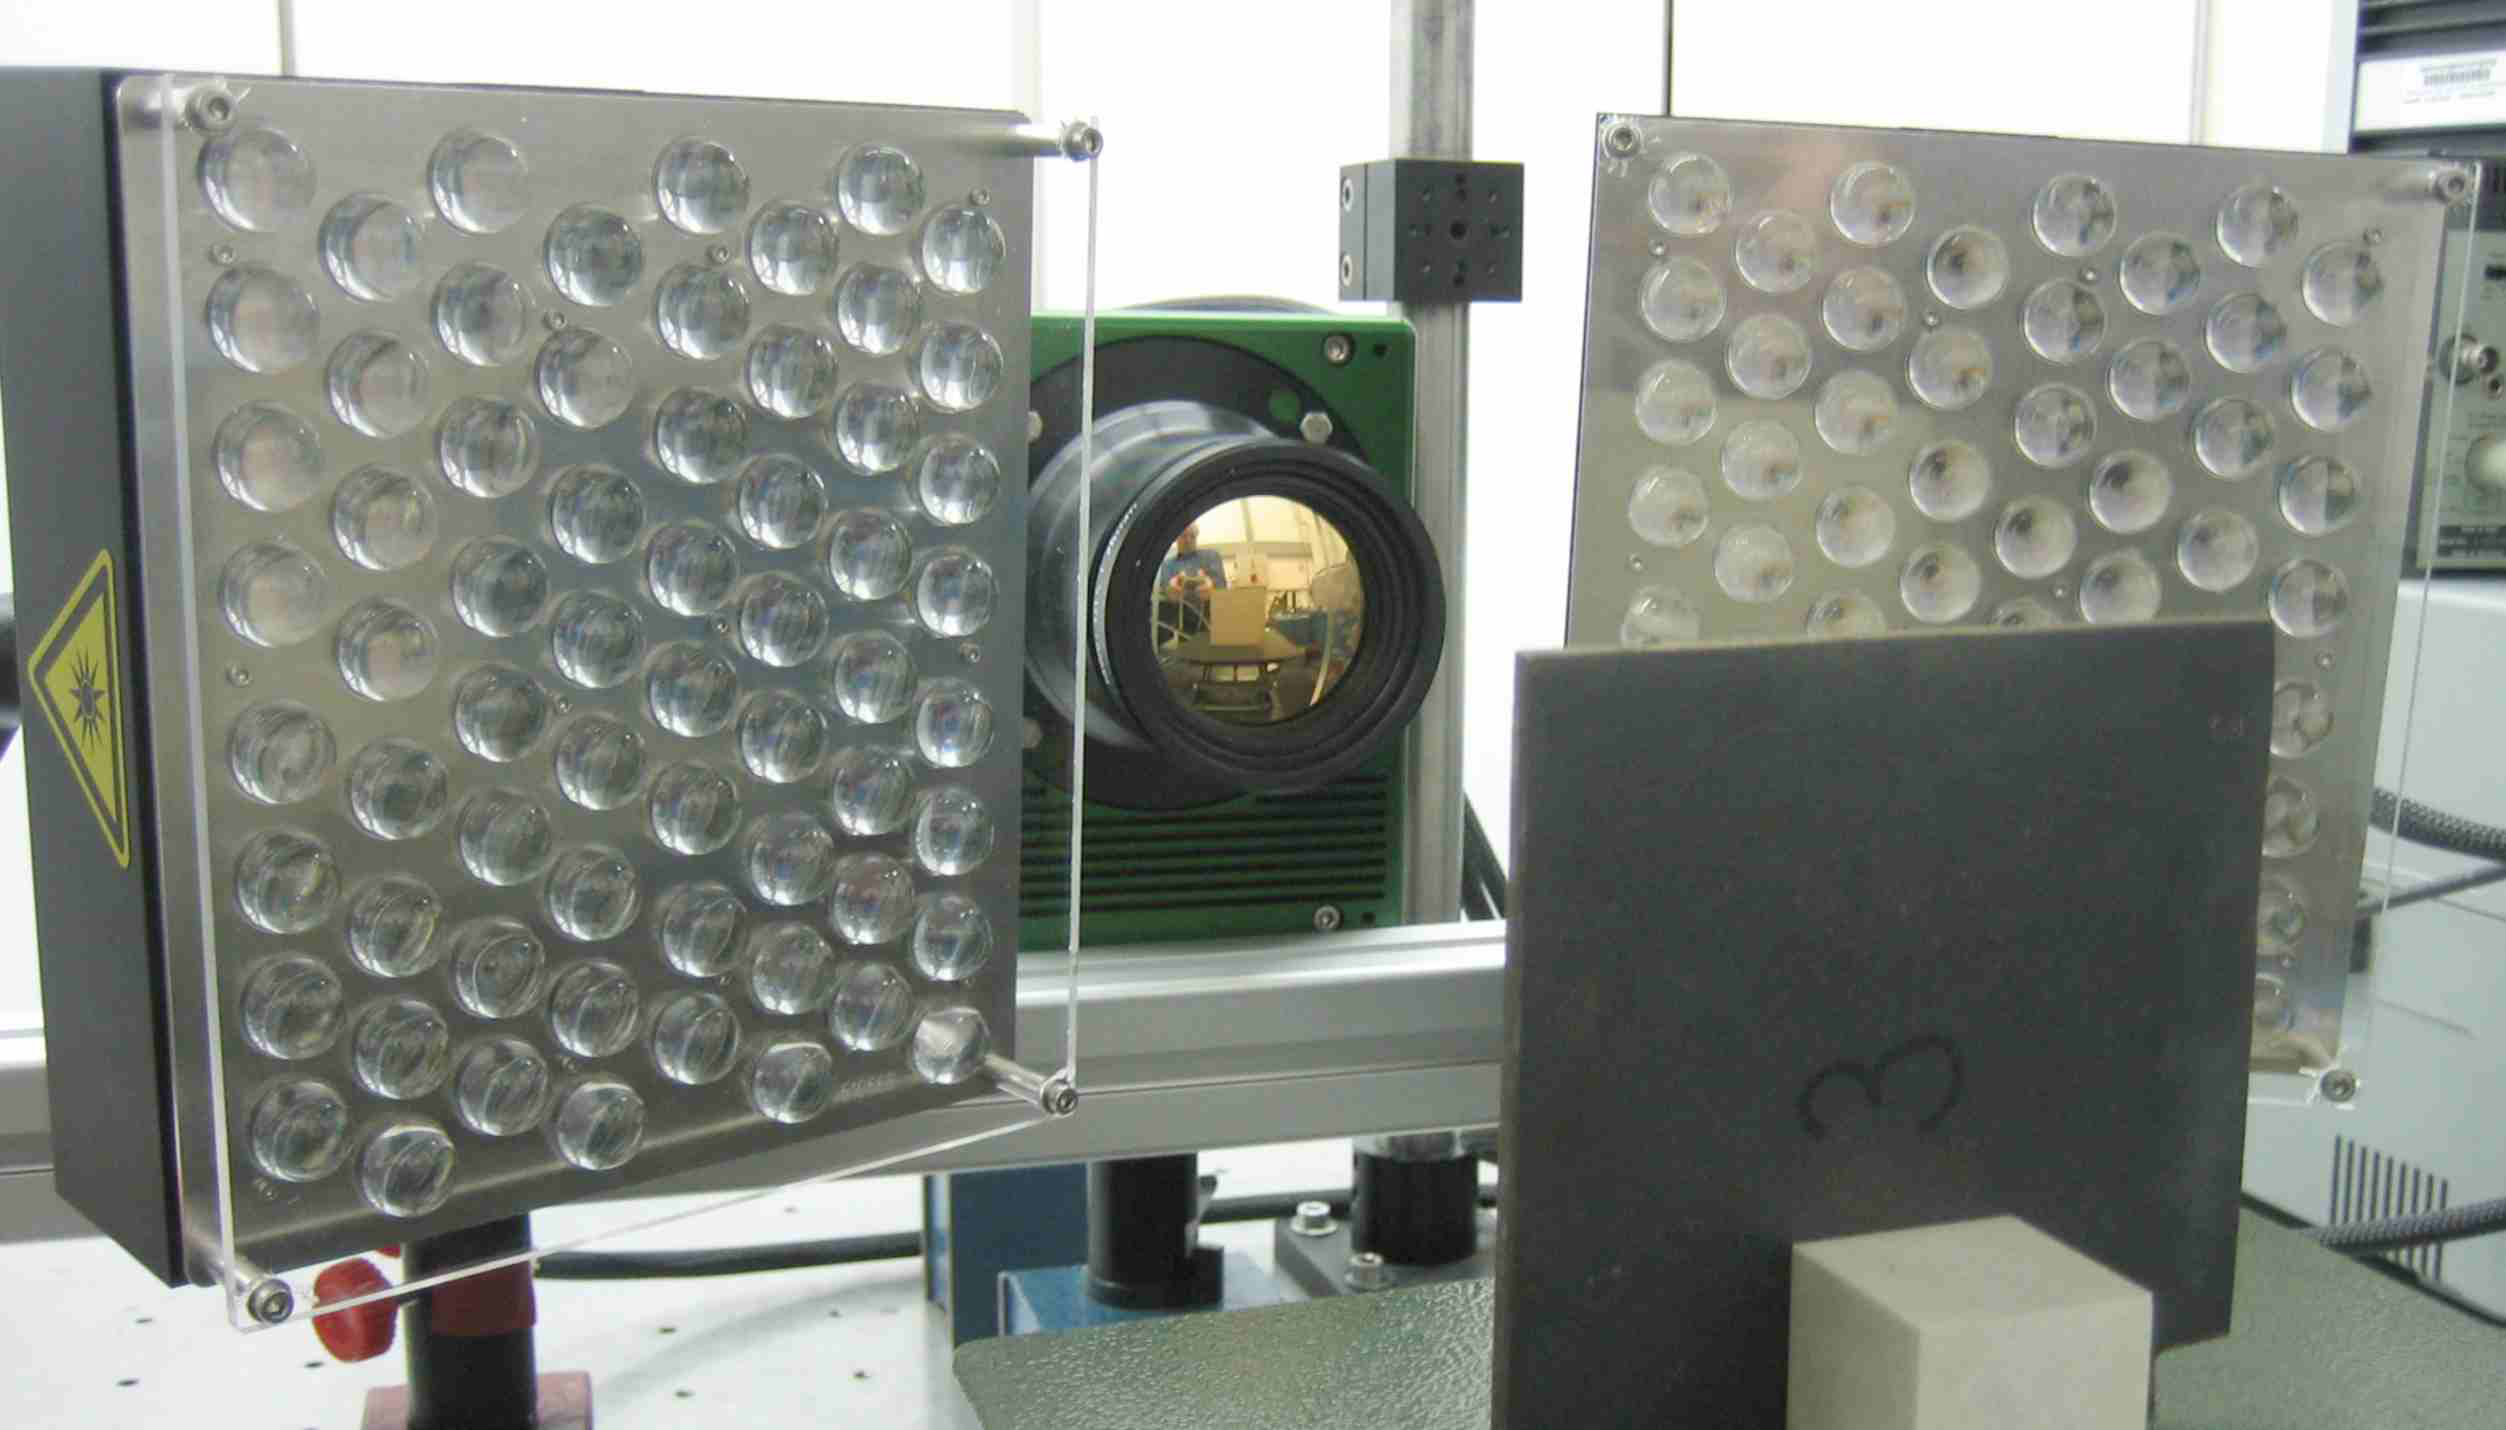 Prüfung einer Polymerprobe mit der Dual-Band Infrarotkamera mit der aktiven Thermographie unter Verwendung eines LED-Arrays zur Aufheizung.